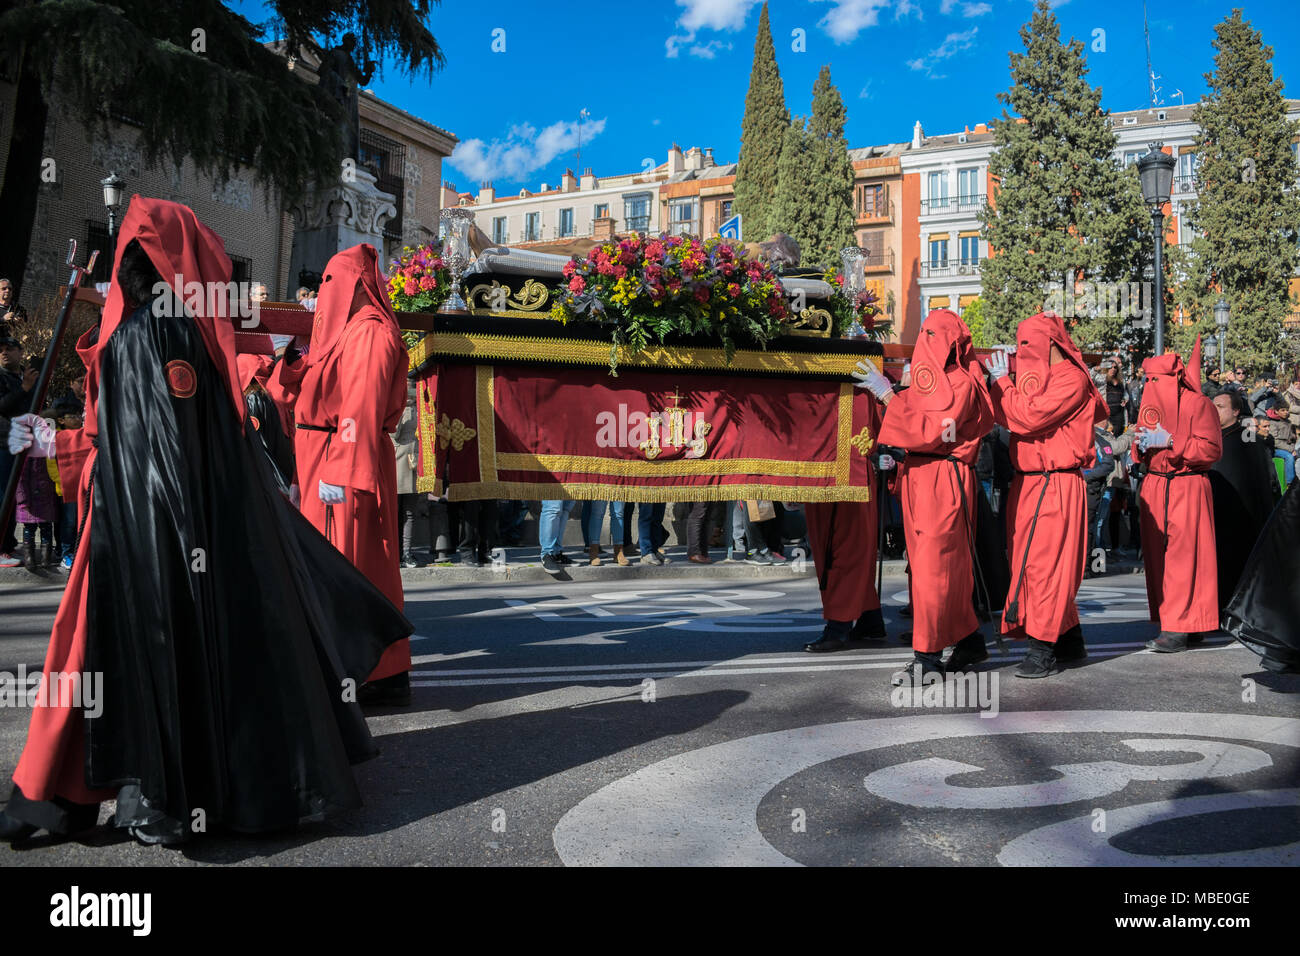 Büßer tragen das Bildnis von Jesus während einer Ostern Parade am Karsamstag, der Semana Santa (Karwoche) Paraden, Madrid, Spanien, 2018 Stockfoto